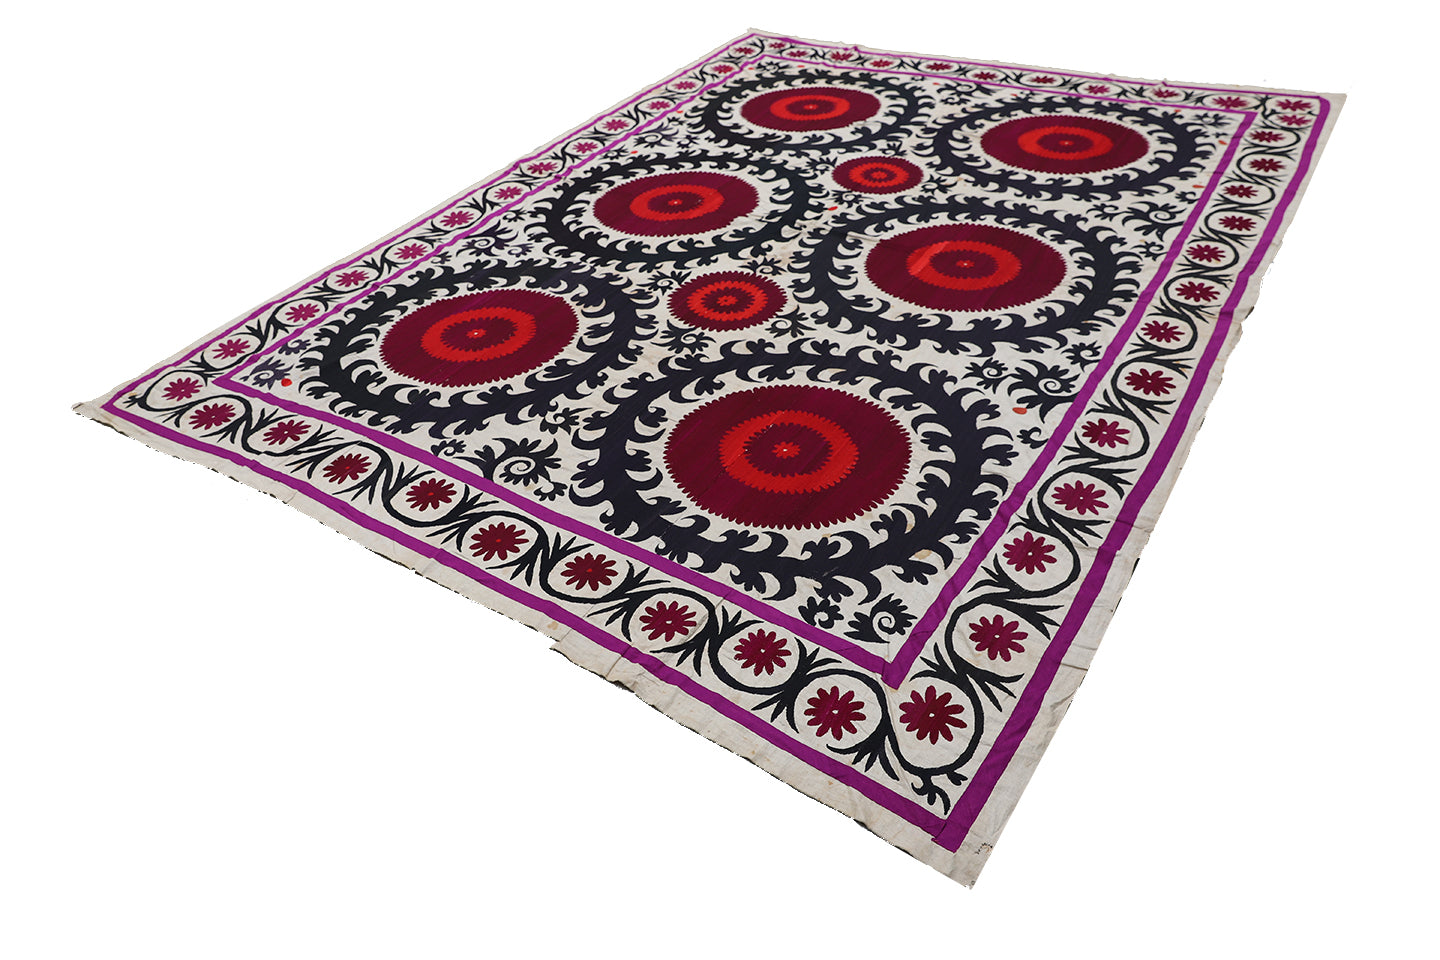 8'x10' Vintage Uzbek Embroidery